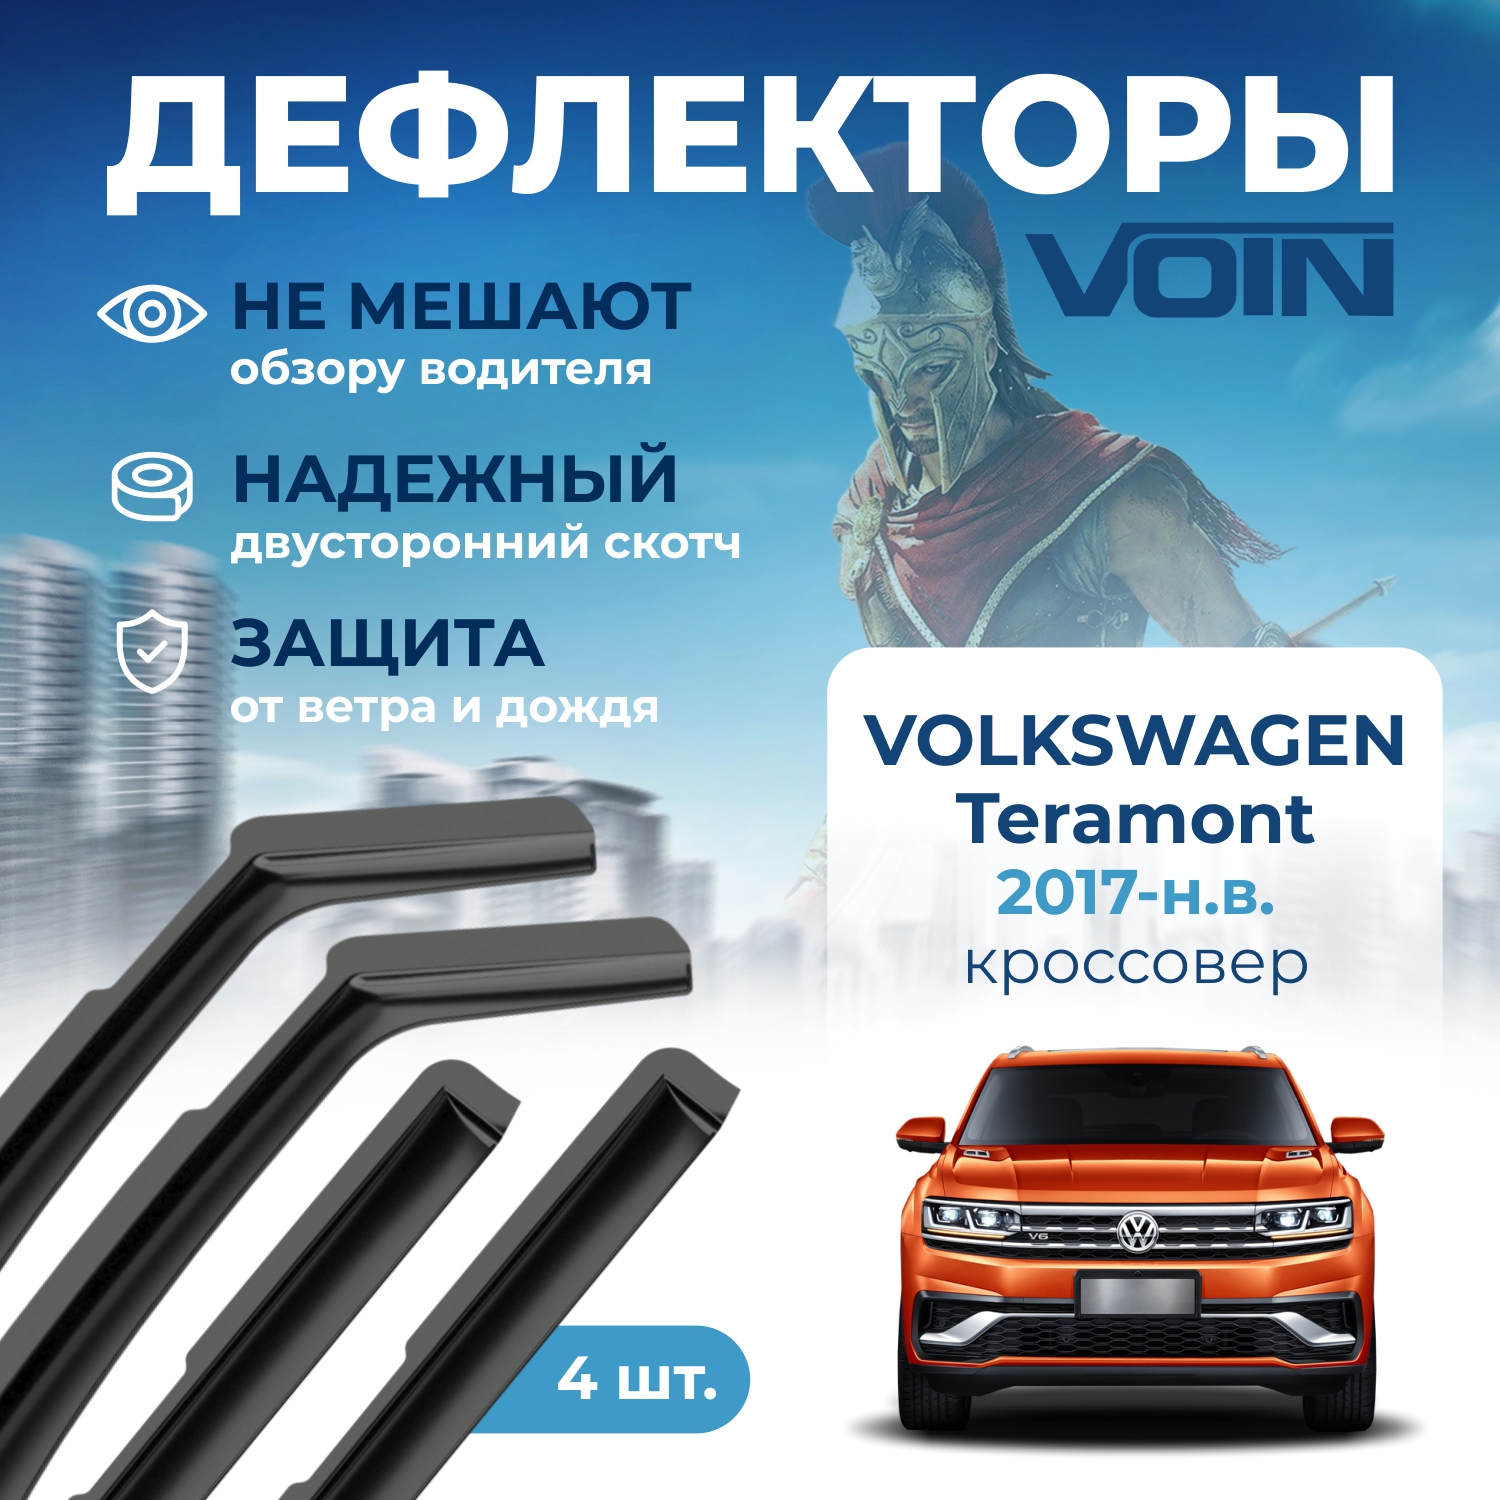 Дефлекторы окон Voin на Volkswagen Teramont 2017-н.в., кроссовер, вставные, скотч,к-т 4 шт